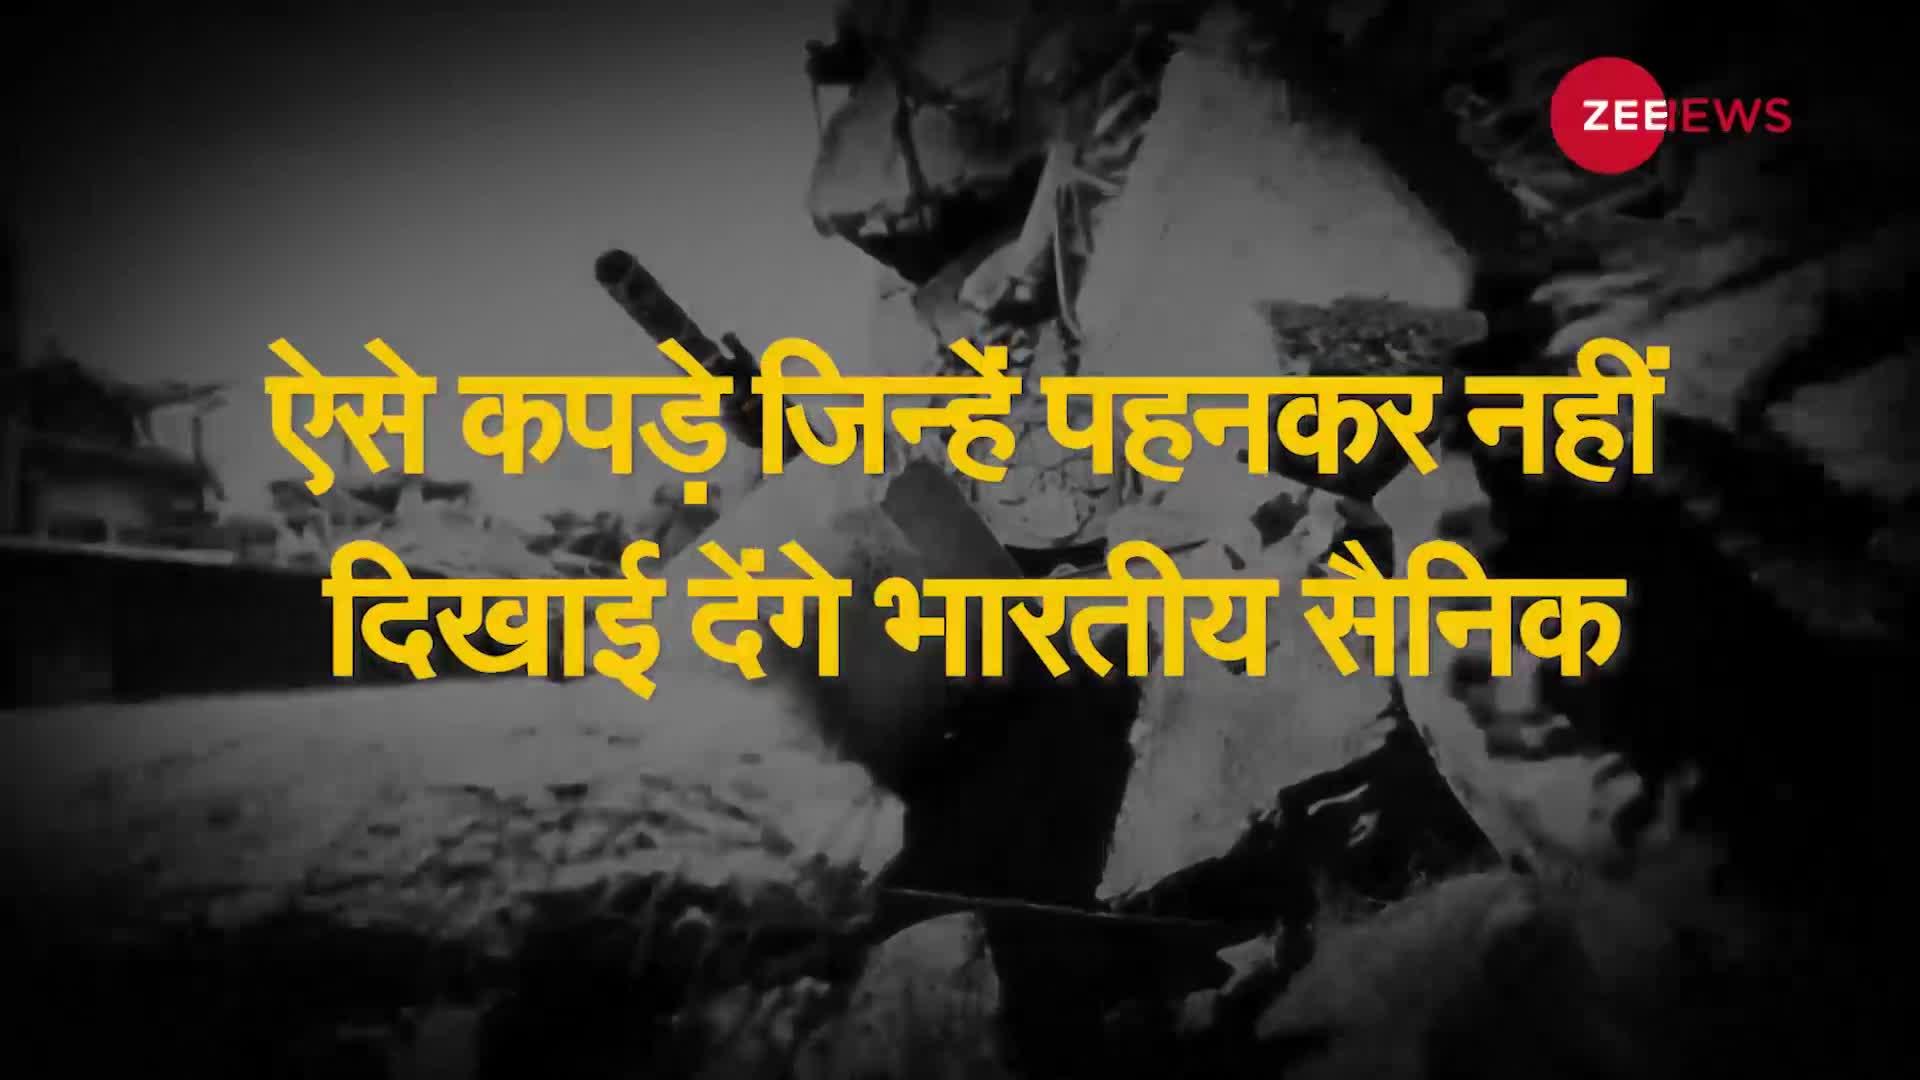 भारत की सेना जल्द करेगी अदृश्य युद्ध, सैनिक पहनेंगे 'नकली स्किन'